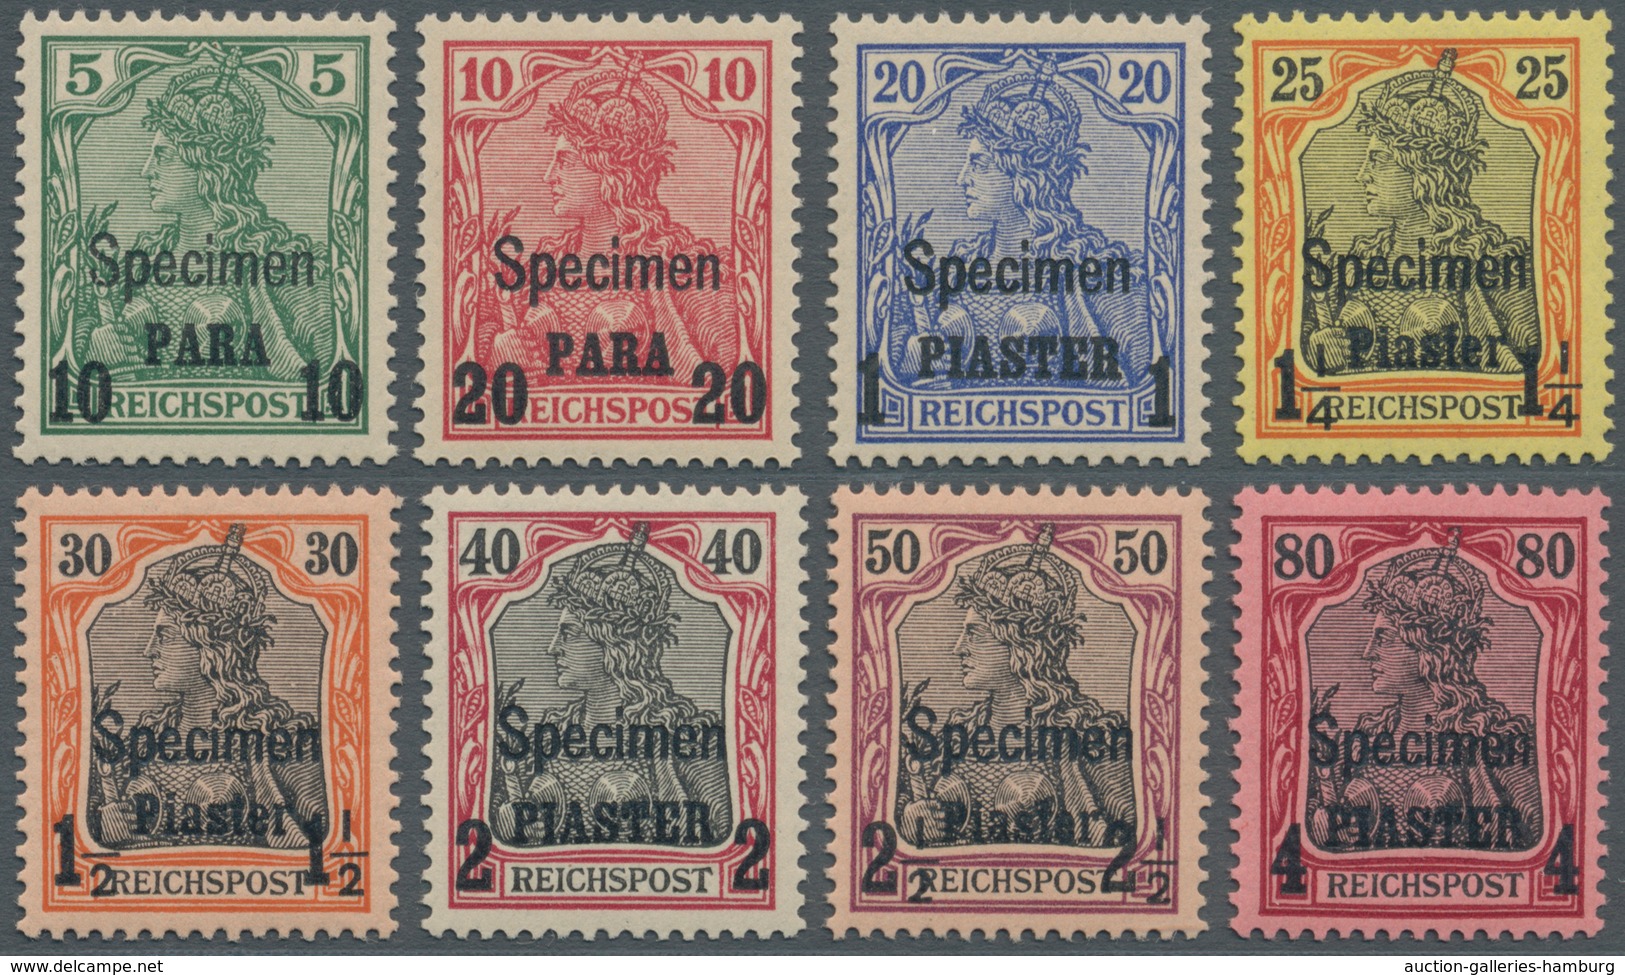 Deutsche Post In Der Türkei: 1900, 10 Pa. Bis 4 Pa. Auf Germania Mit Aufdruck "Specimen", Postfrisch - Deutsche Post In Der Türkei